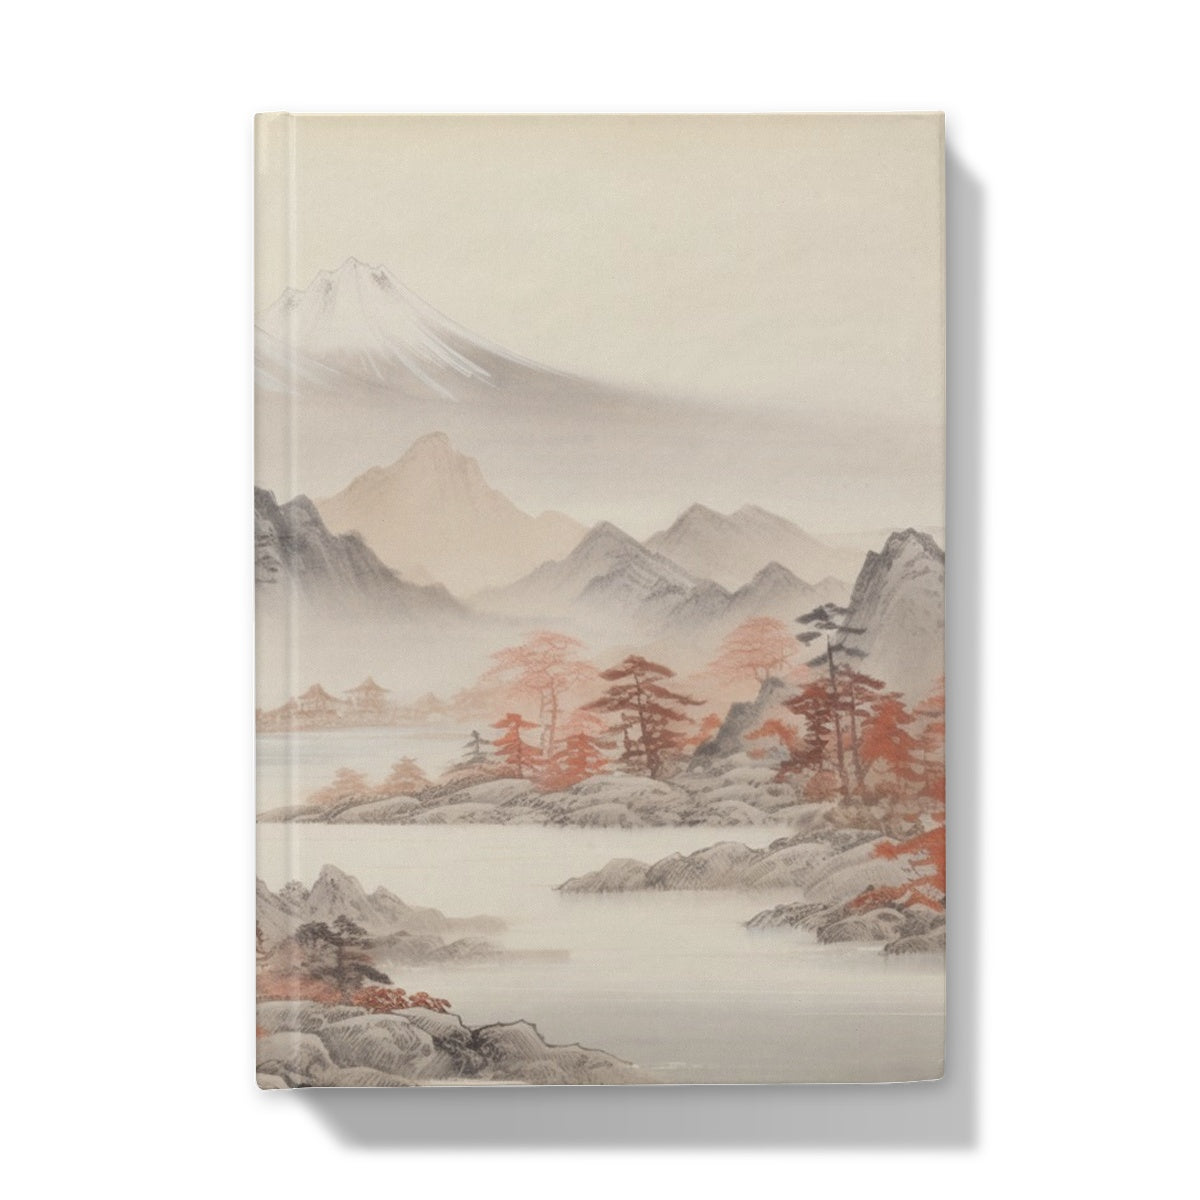 "変わりゆく葉" (Kawariyuku ha), (Leaves Of Change) Hardback Journal